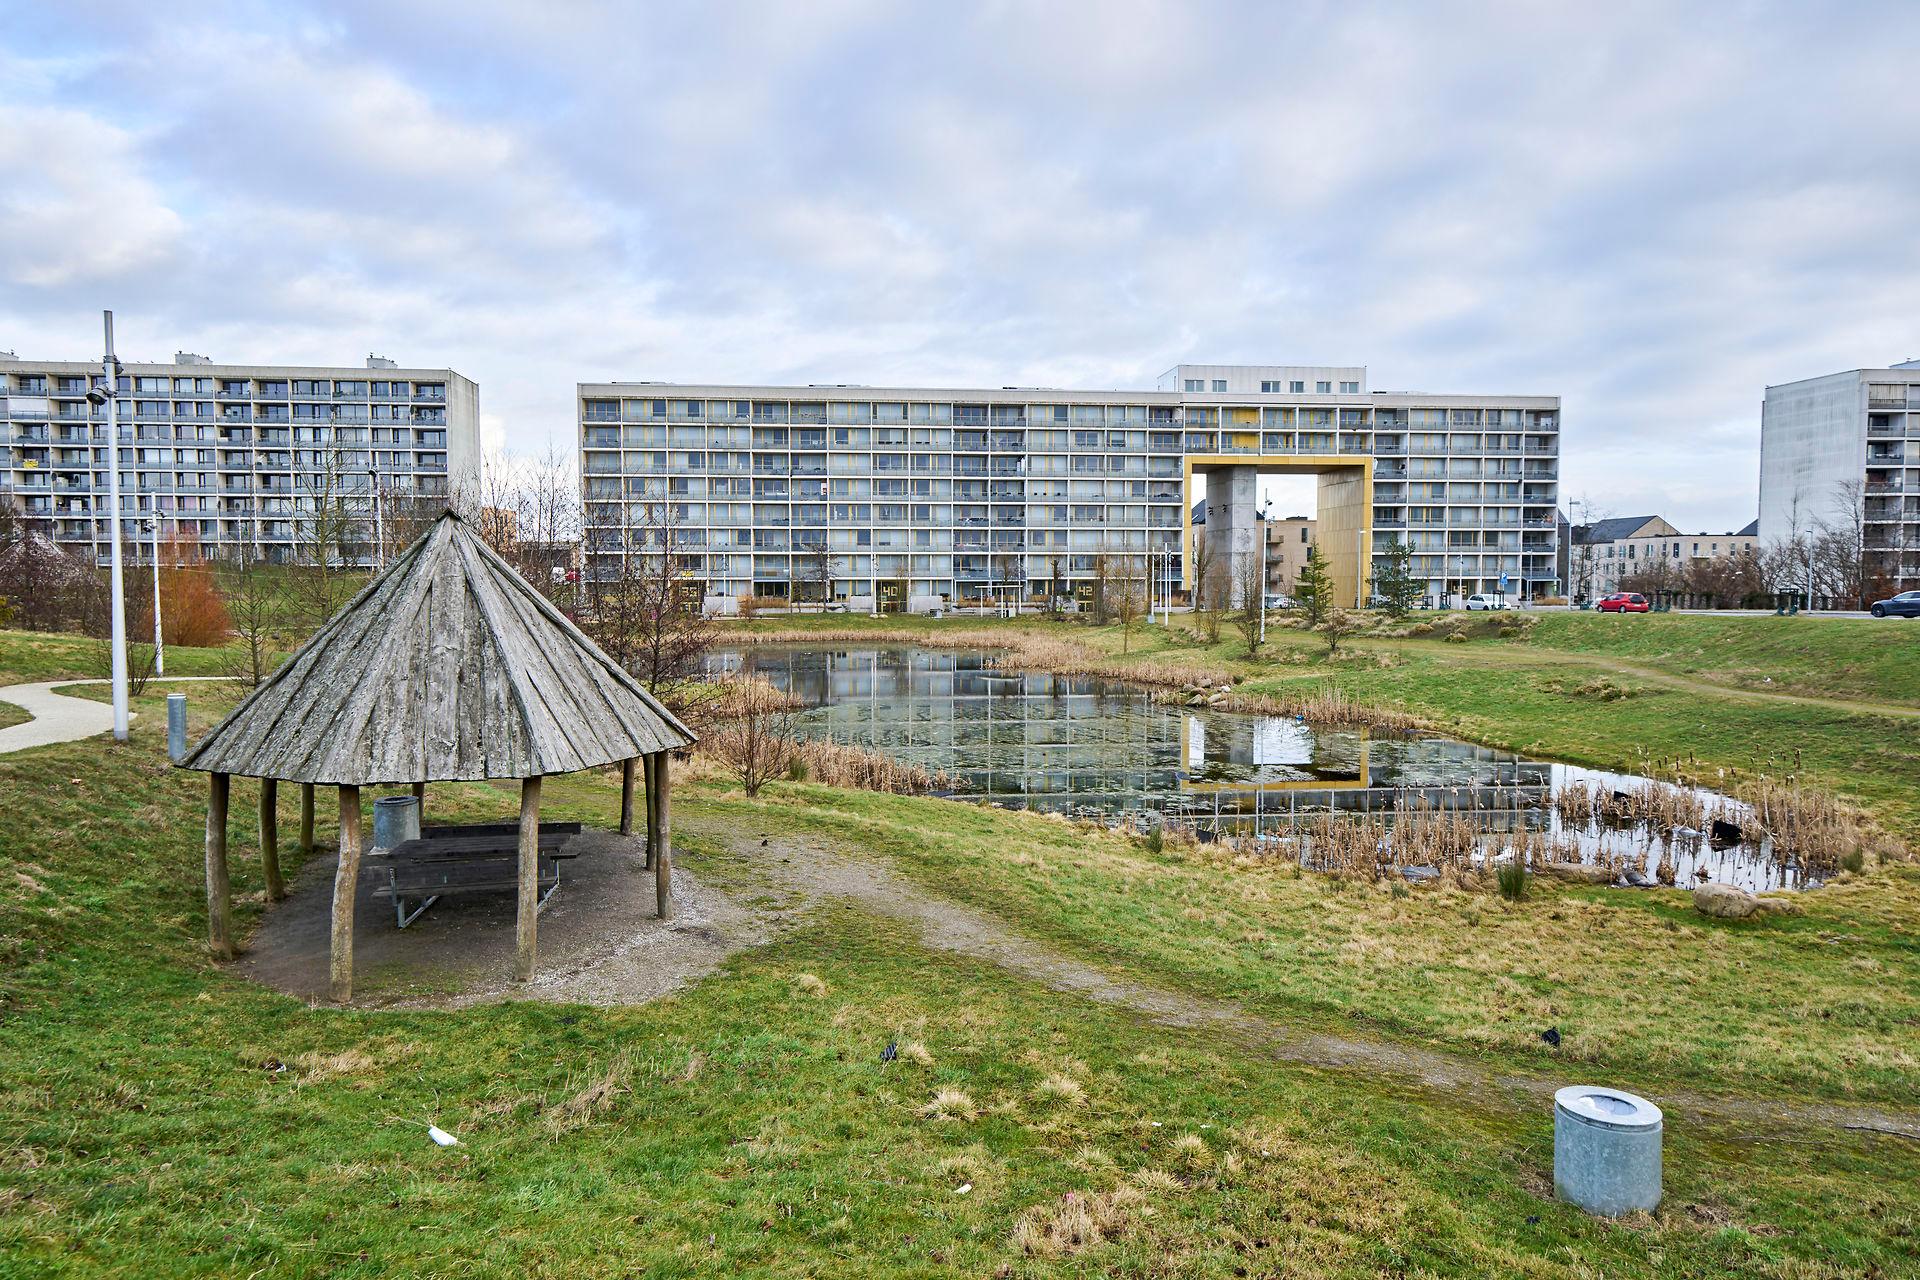 Den meget roste renovering af blok 4 i Gellerup Parken, Aarhus, som for et par år siden blev omdannet til en lokal triumfbue og lysskulptur, er ét af  Lars Autrups eksempler på, at der både menneskeligt og miljømæssigt er meget at vinde ved at bygge om i stedet for at rive ned og bygge nyt. I dette indlæg opfordrer han politikerne til at lette byggeriets muligheder for at tænke   grønt i nye baner.